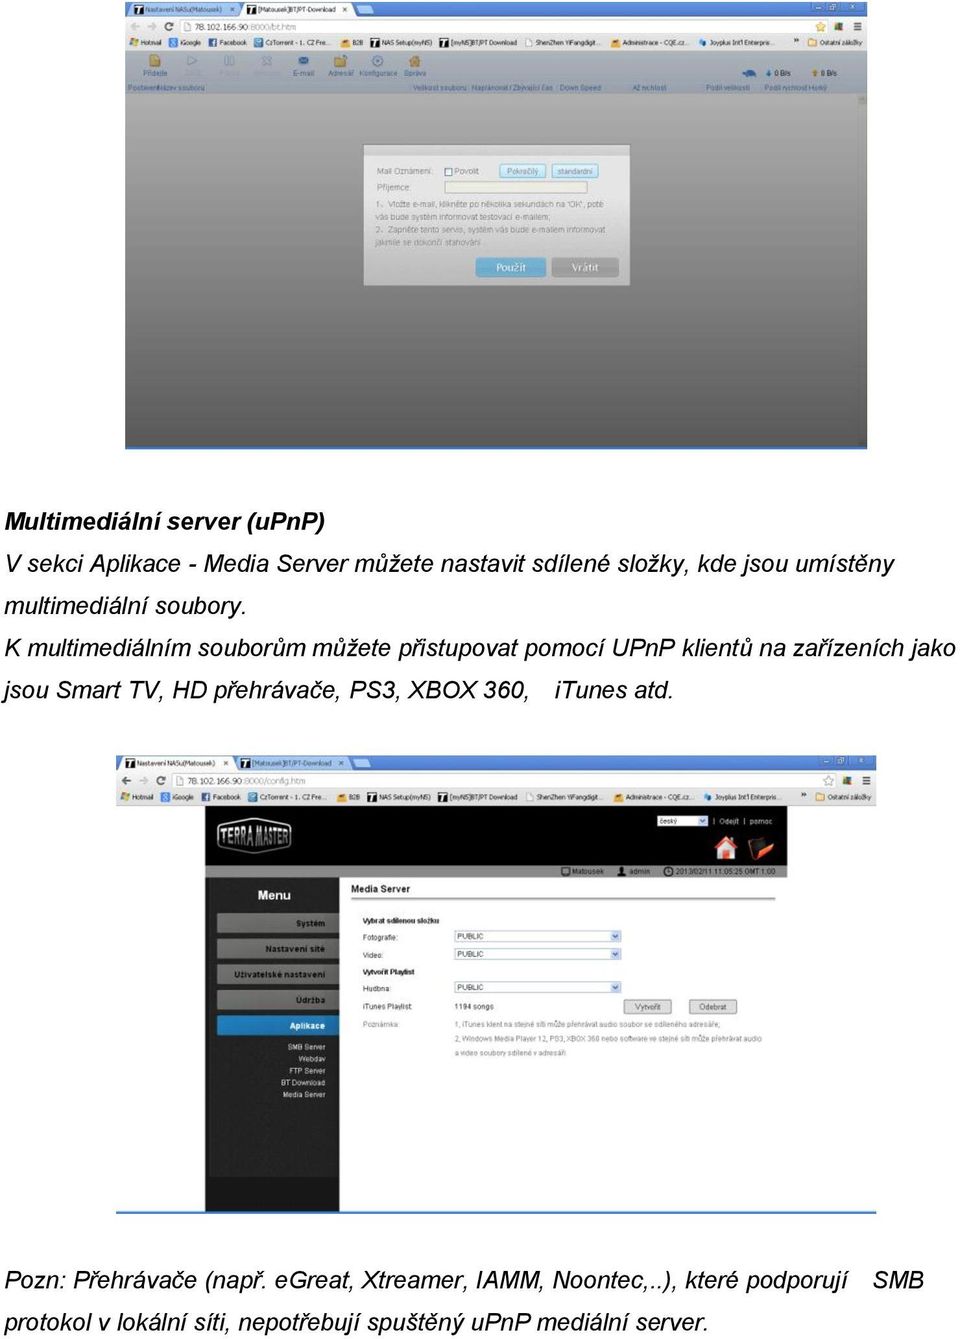 K multimediálním souborům můžete přistupovat pomocí UPnP klientů na zařízeních jako jsou Smart TV, HD